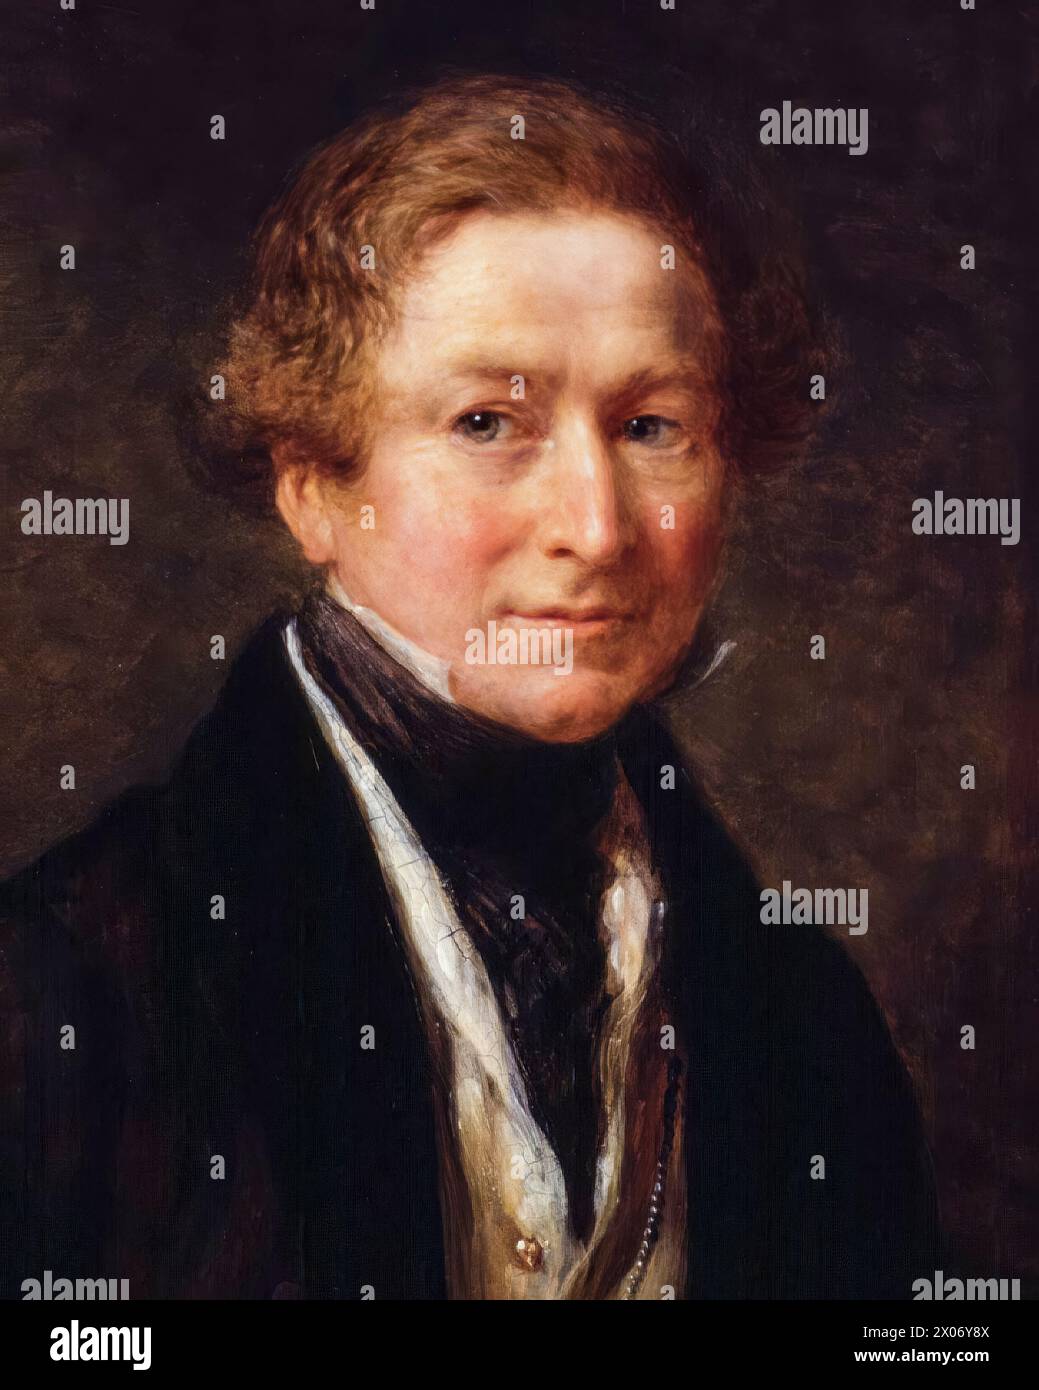 Sir Robert Peel (1788-1850), II baronetto, due volte primo ministro del Regno Unito 1834-1835 e 1841-1846, ritratto a olio su tavola di John Linnell, 1838 Foto Stock